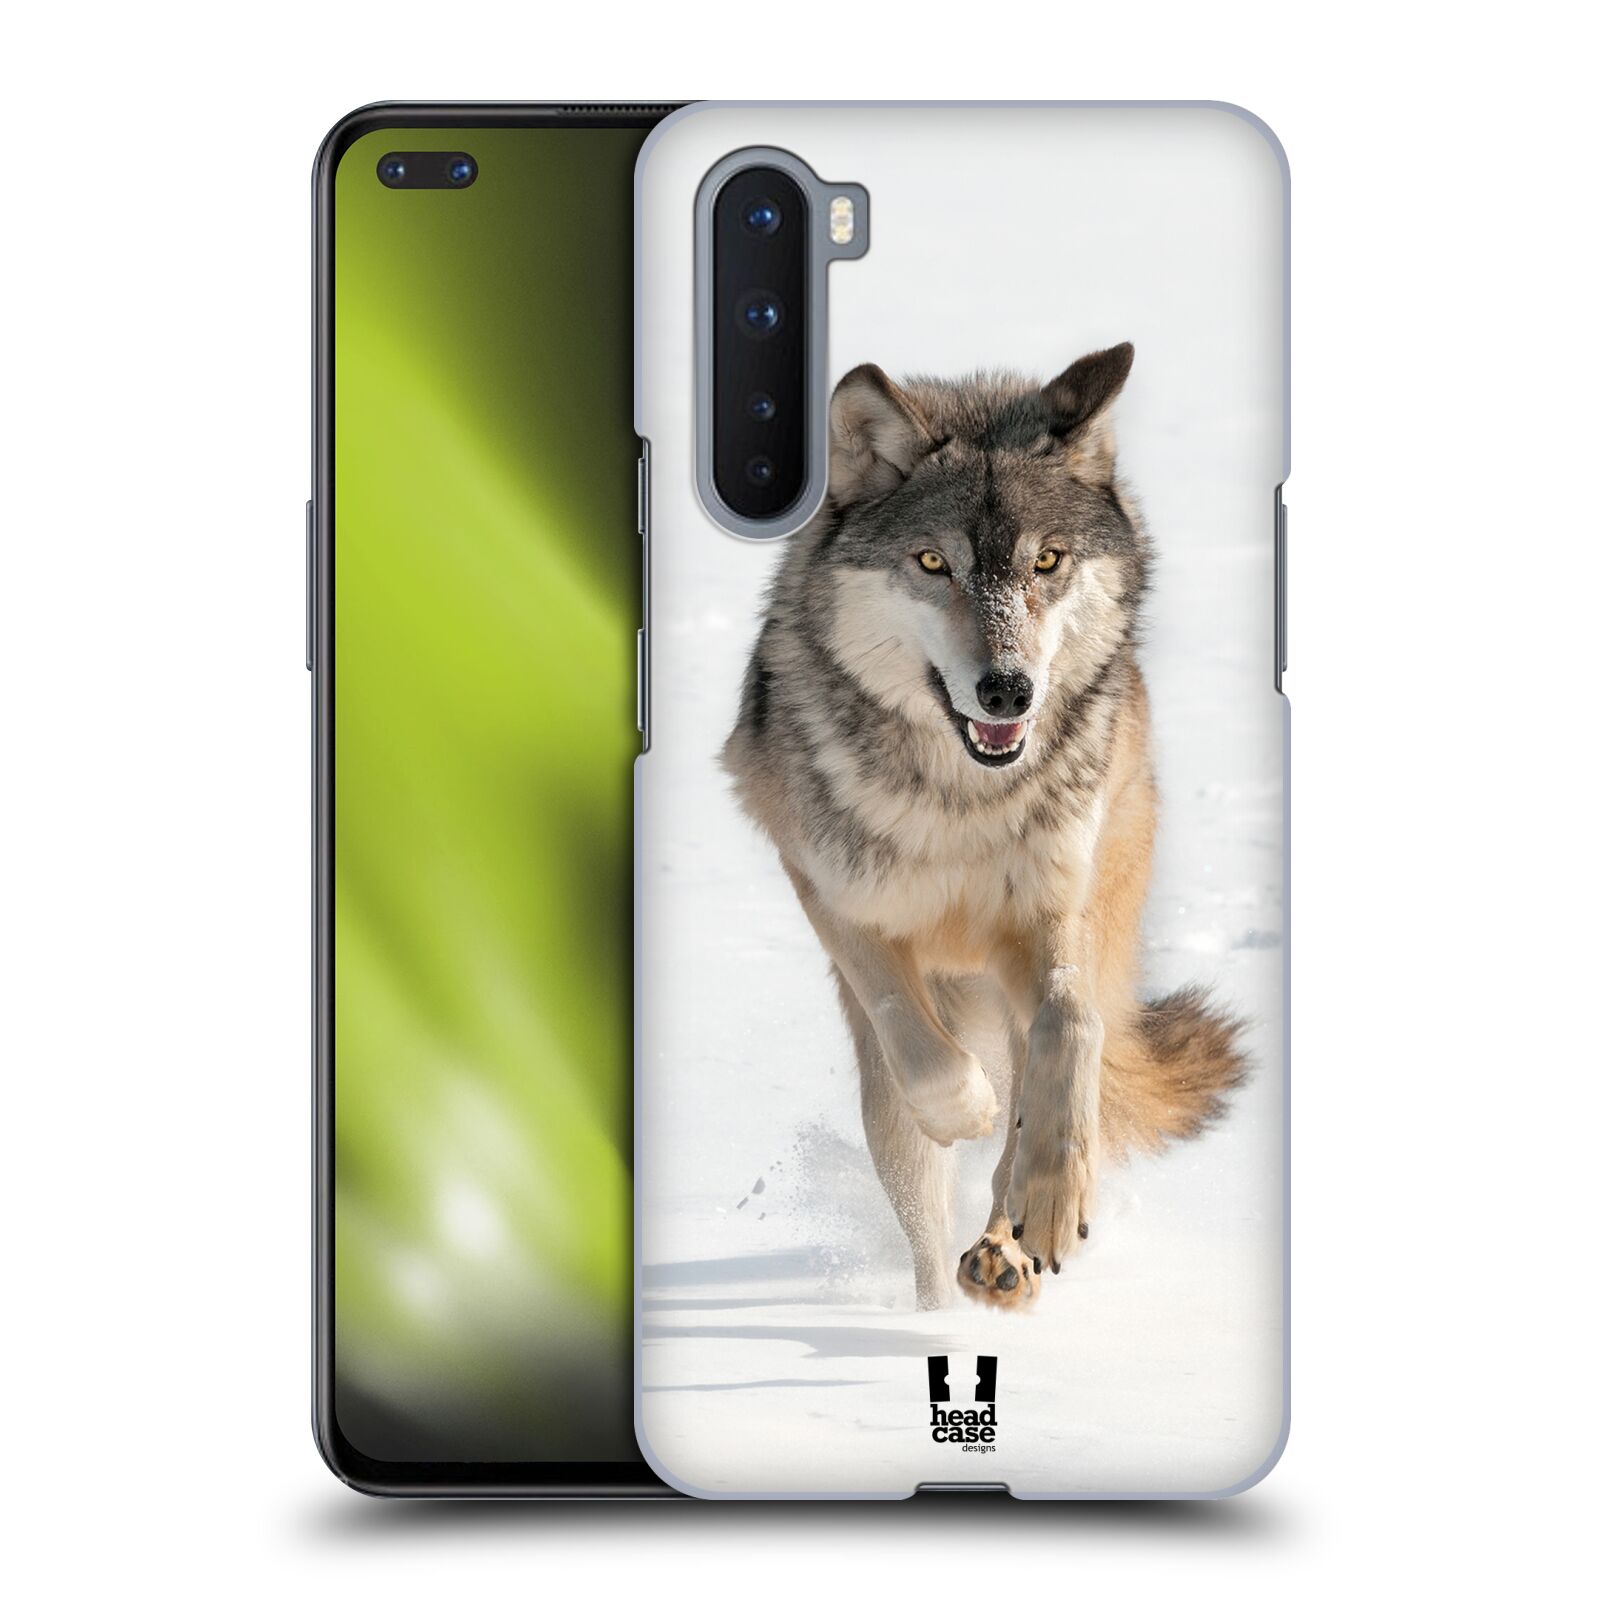 Zadní obal pro mobil OnePlus Nord - HEAD CASE - Svět zvířat divoký vlk